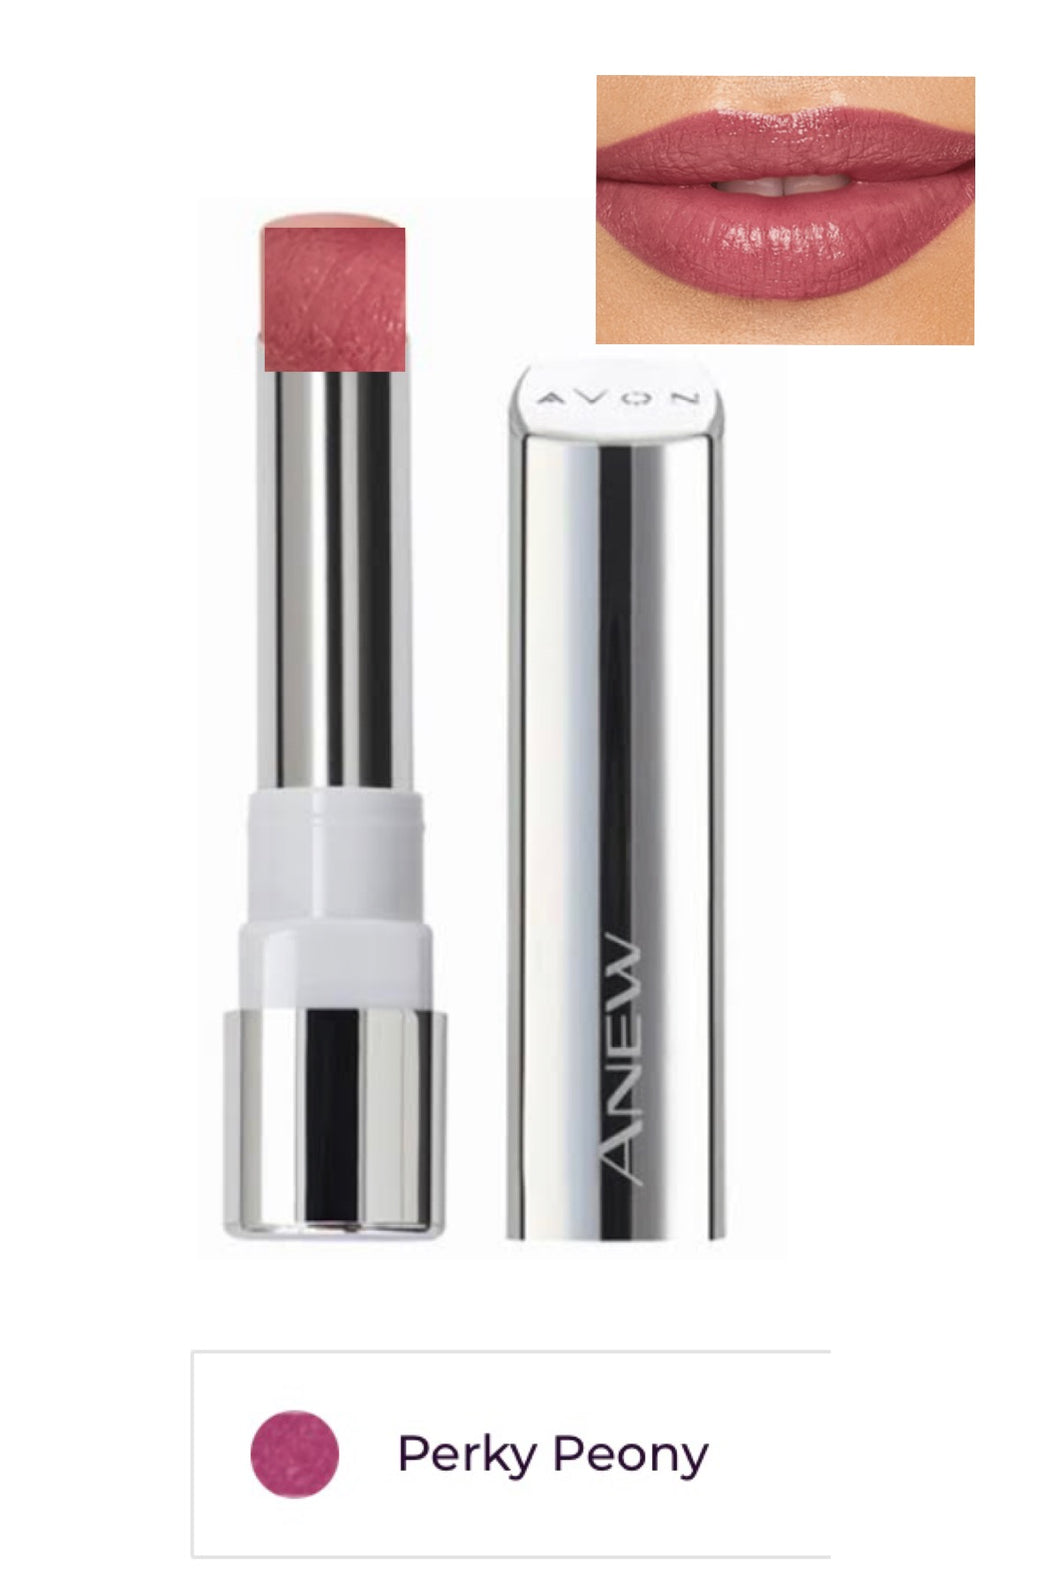 Perky Peony Anew Revival Serum Lipstick